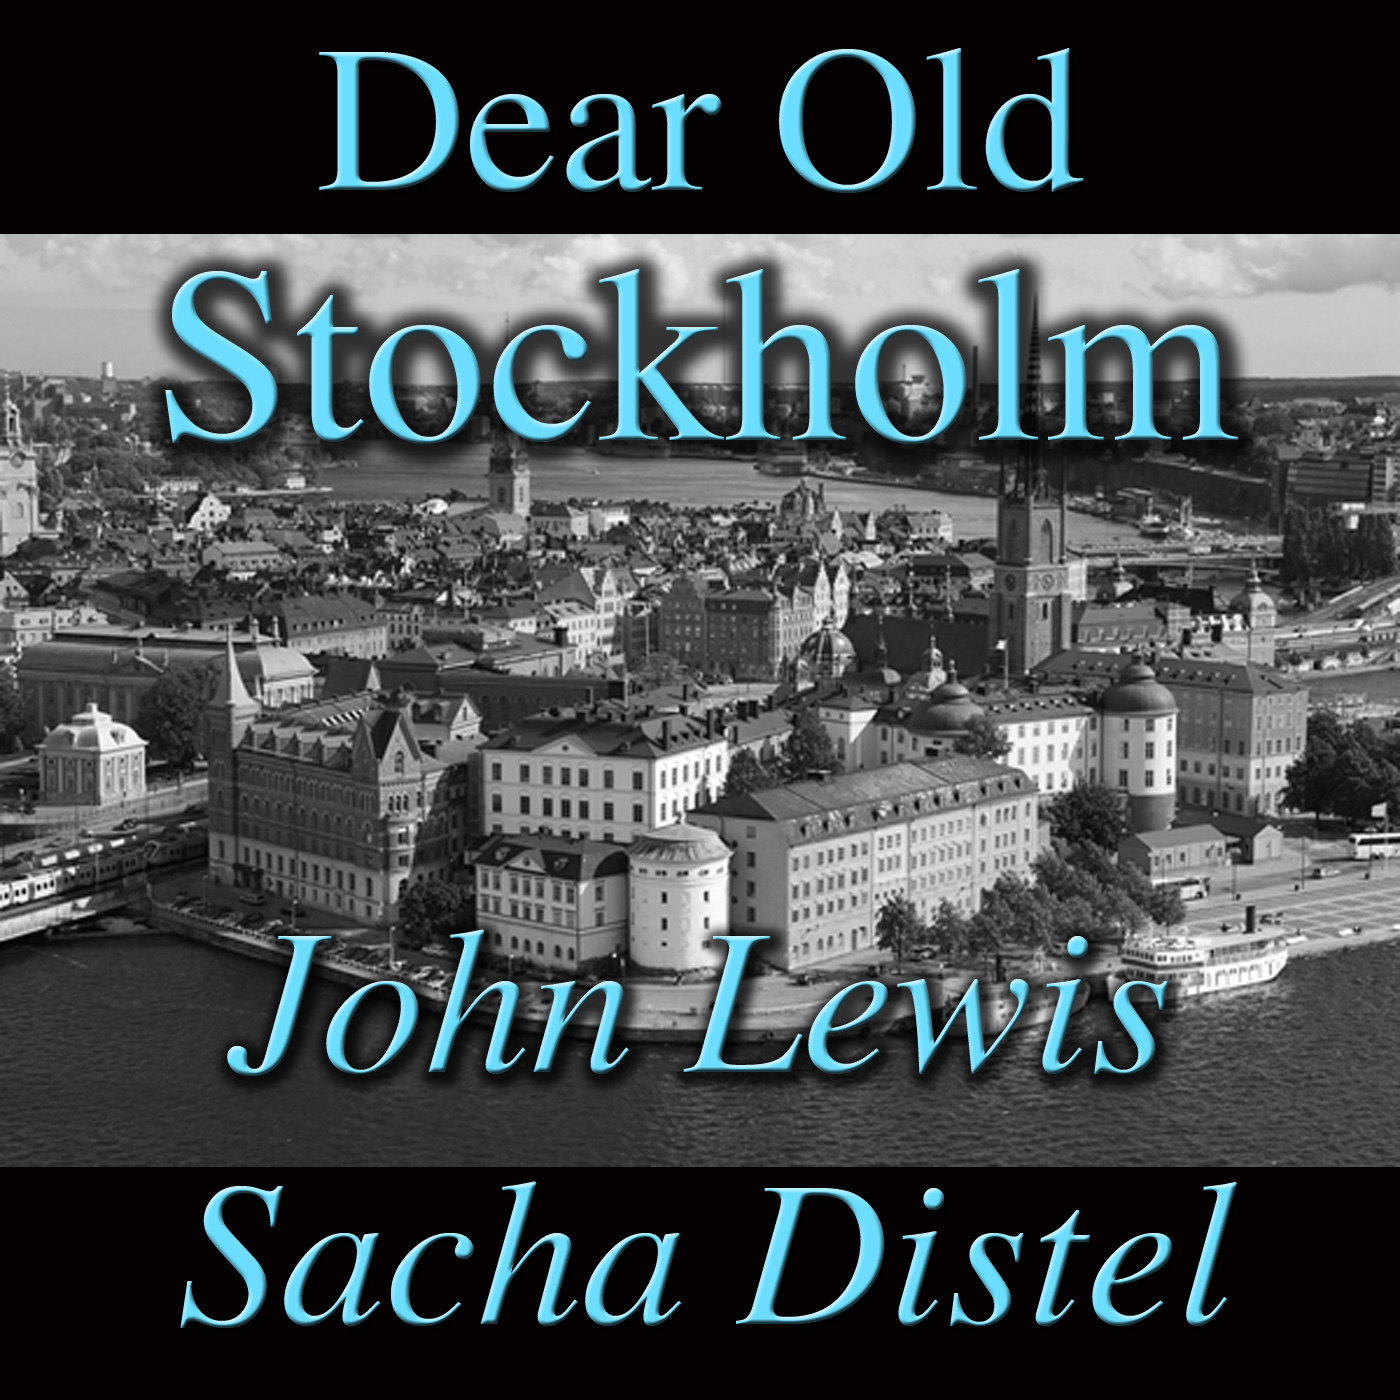 Dear Old Stockholm